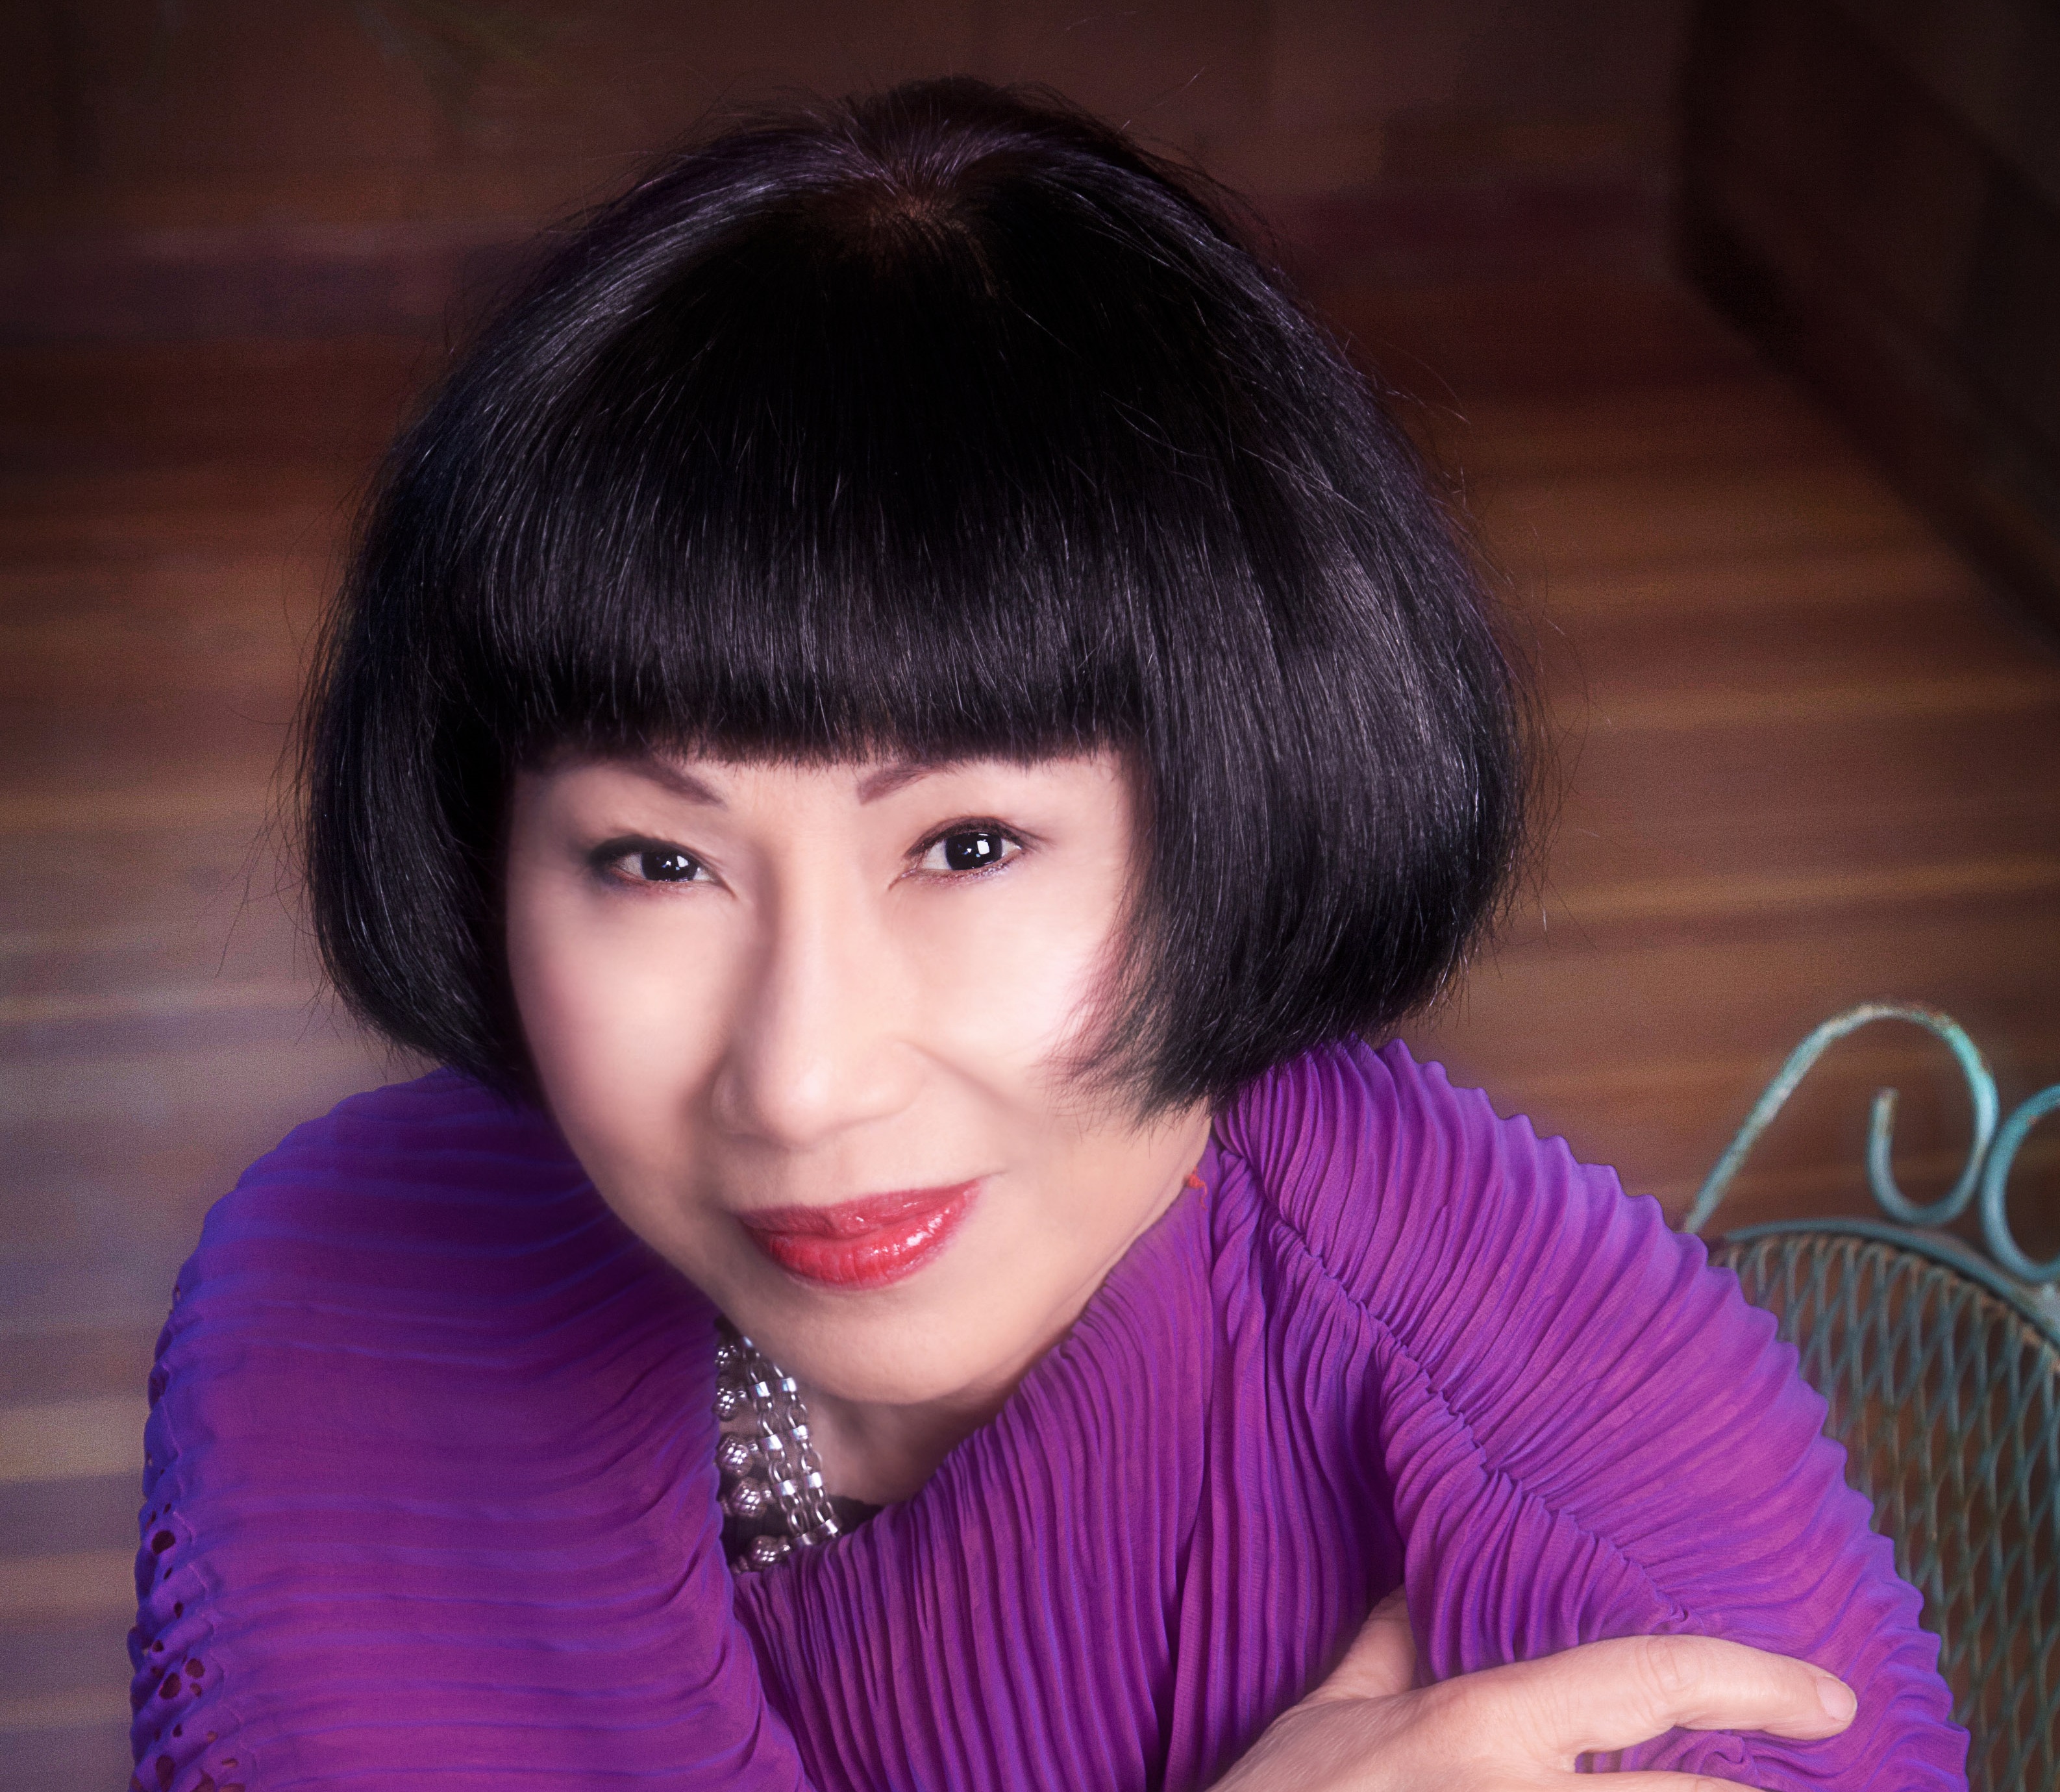 Amy Tan sýnir okkur í tvo heima